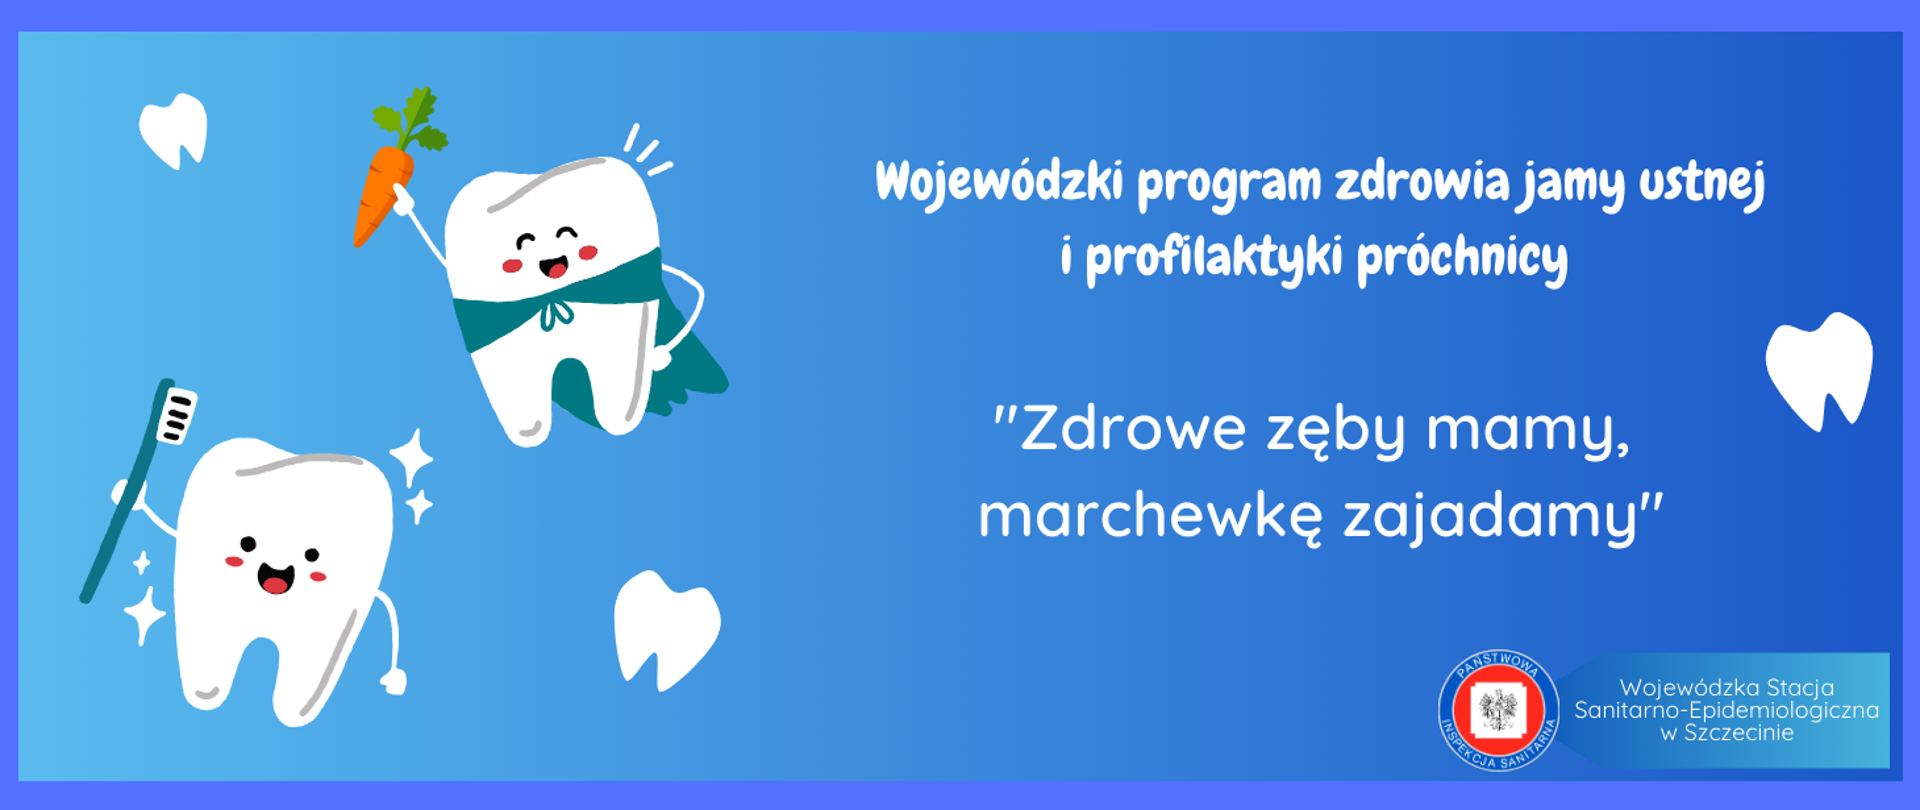 Na niebieskim tle postaci „ząbków” oraz nazwa programu i logo Państwowej Inspekcji Sanitarnej.